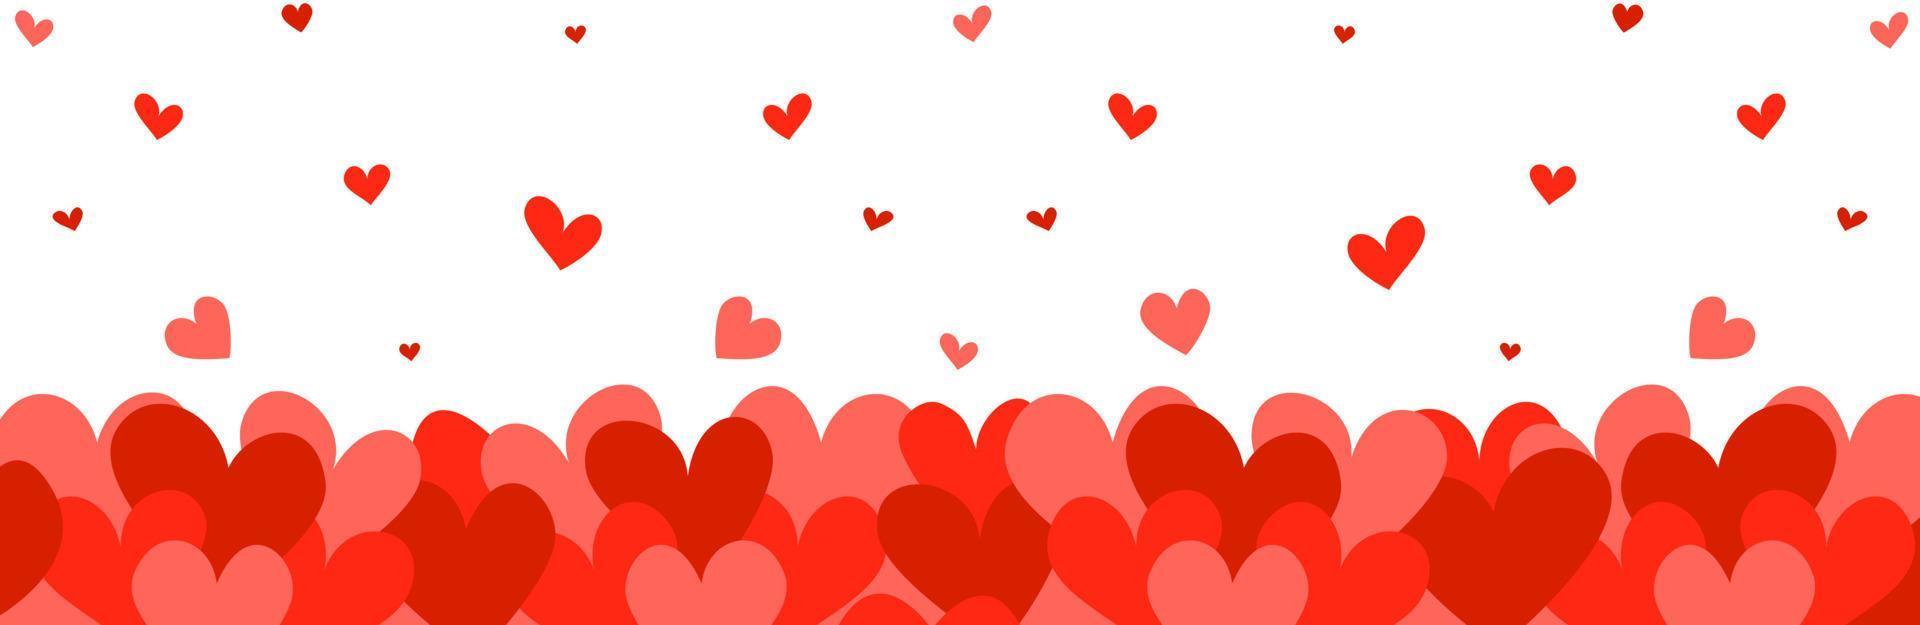 fundo digital do dia dos namorados de corações para site, design de folheto, banner. Ame. ilustração vetorial em estilo simples. vetor